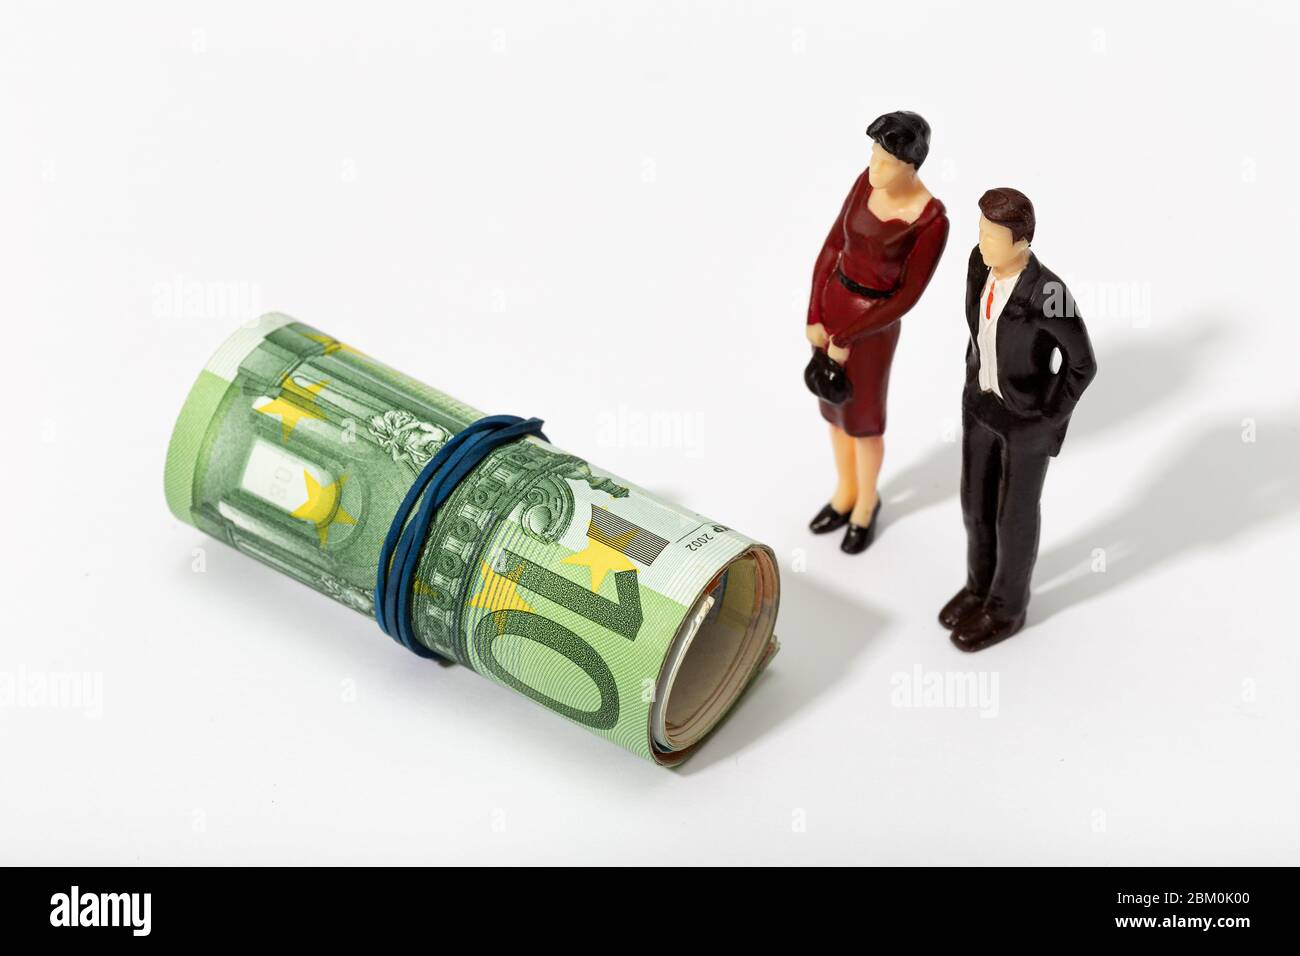 Menschliche Darstellung eines Paares, das eine Rolle Geld anschaut. Finanz-, Investitions- oder Sparkonzept Stockfoto